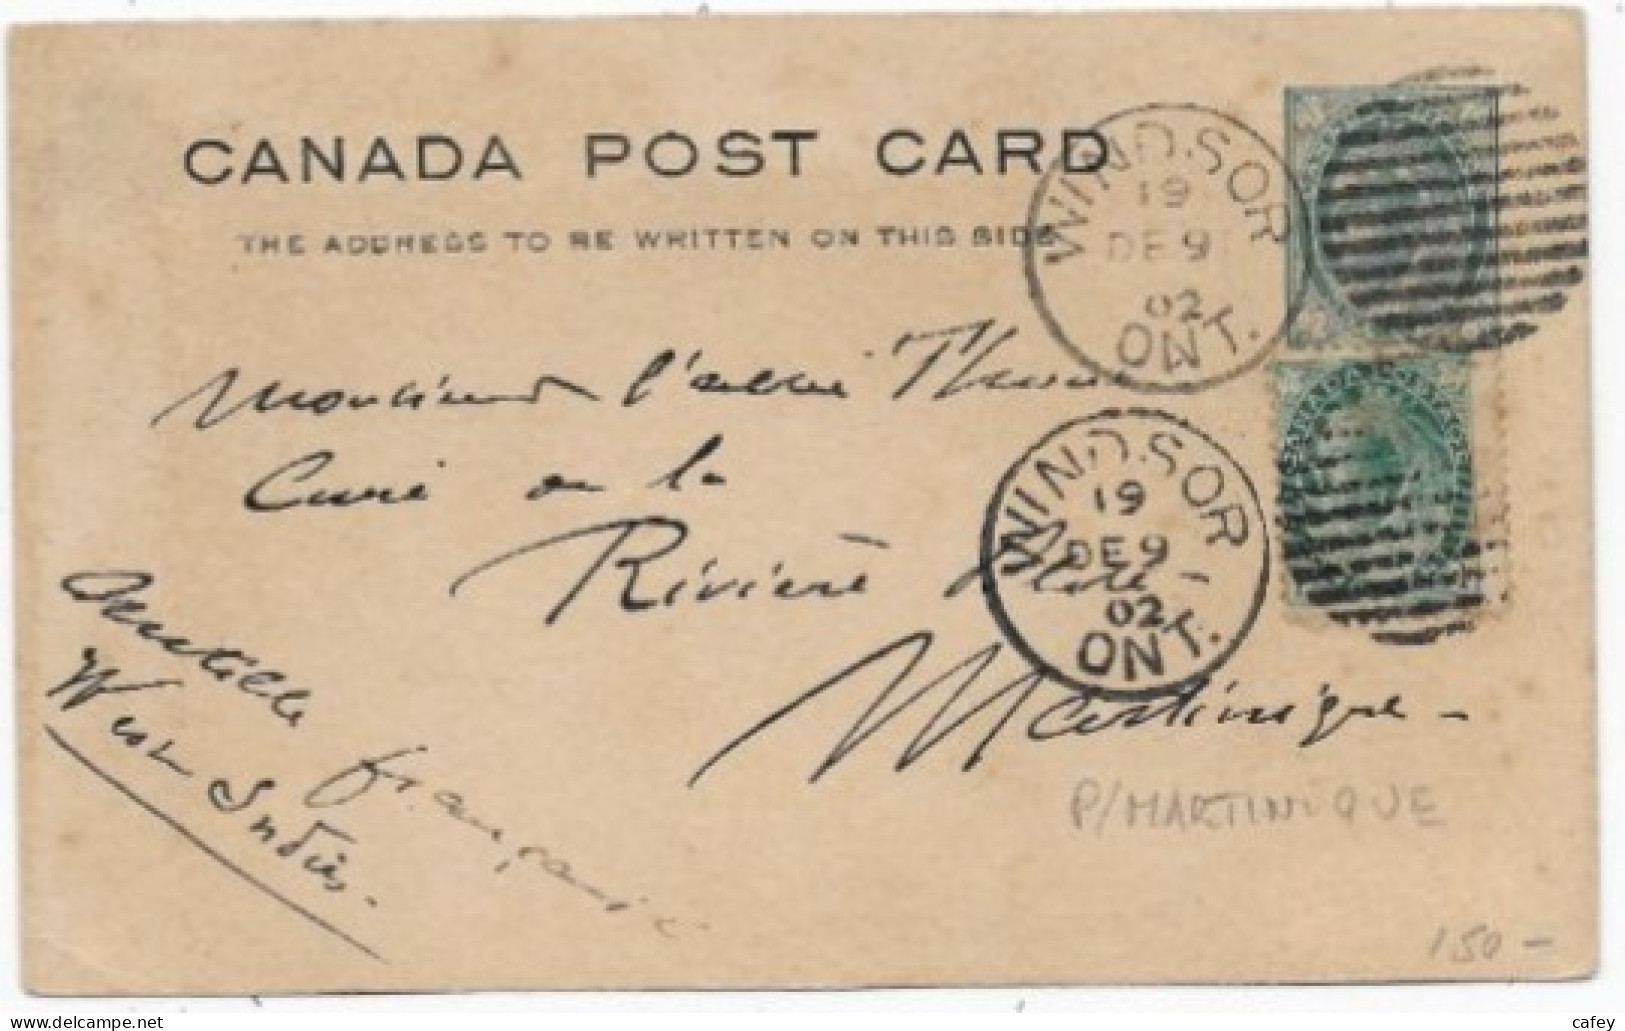 CANADA CP Entier Postal Càd WINDSOR 1902 P / MARTINIQUE Bonne Destination - Briefe U. Dokumente